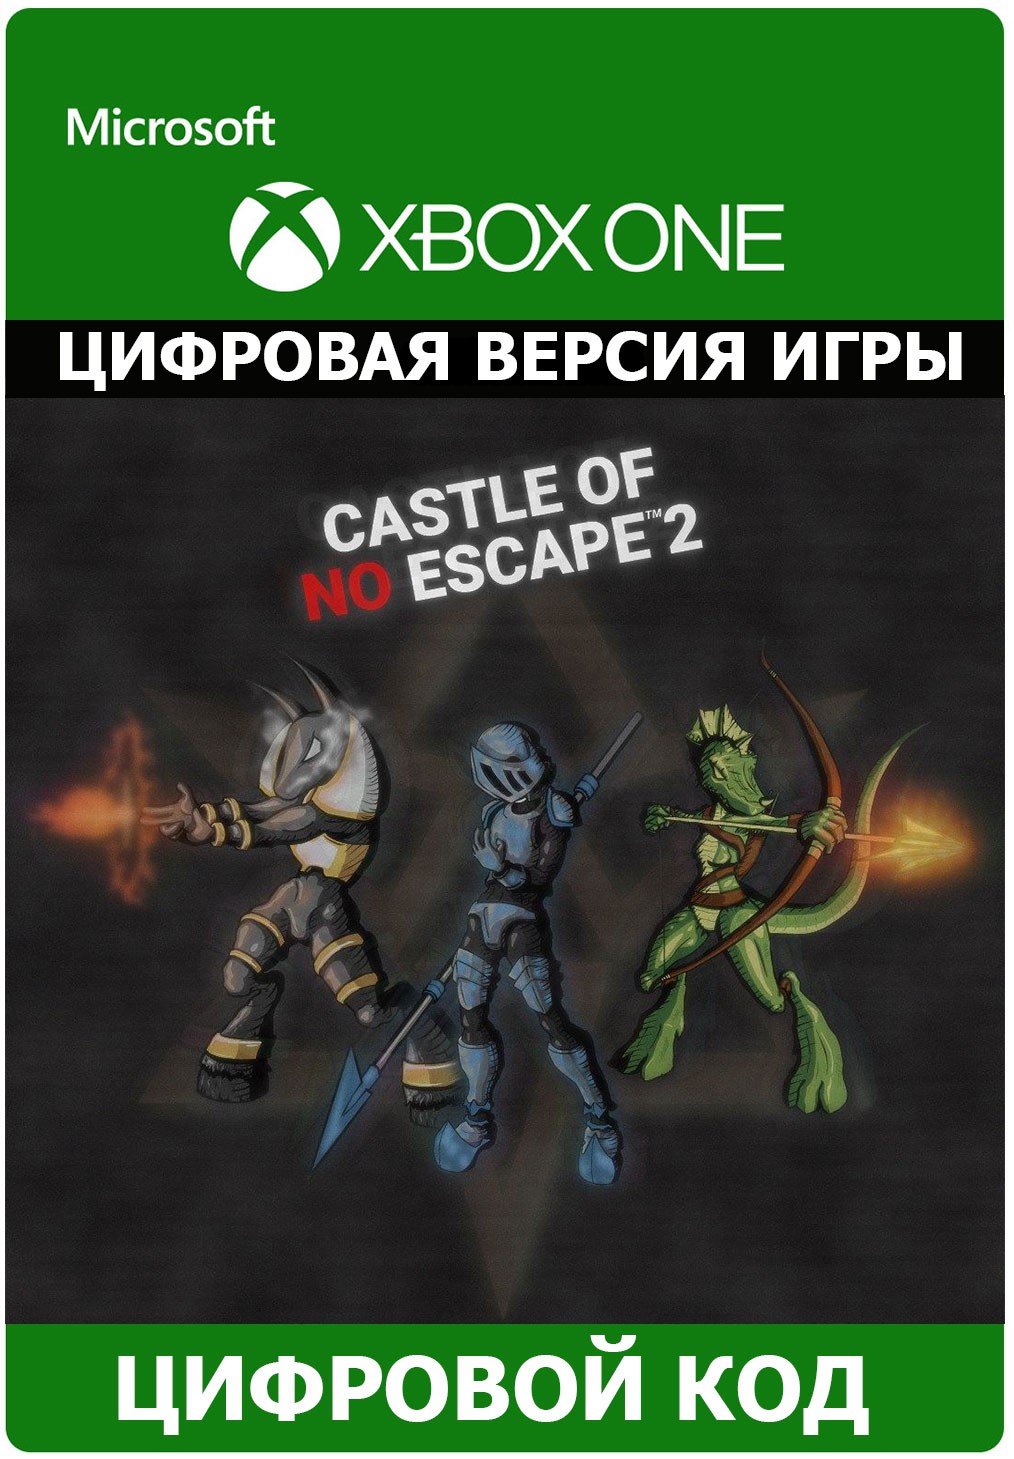 Castle of no Escape 2 XBOX ONE ключ